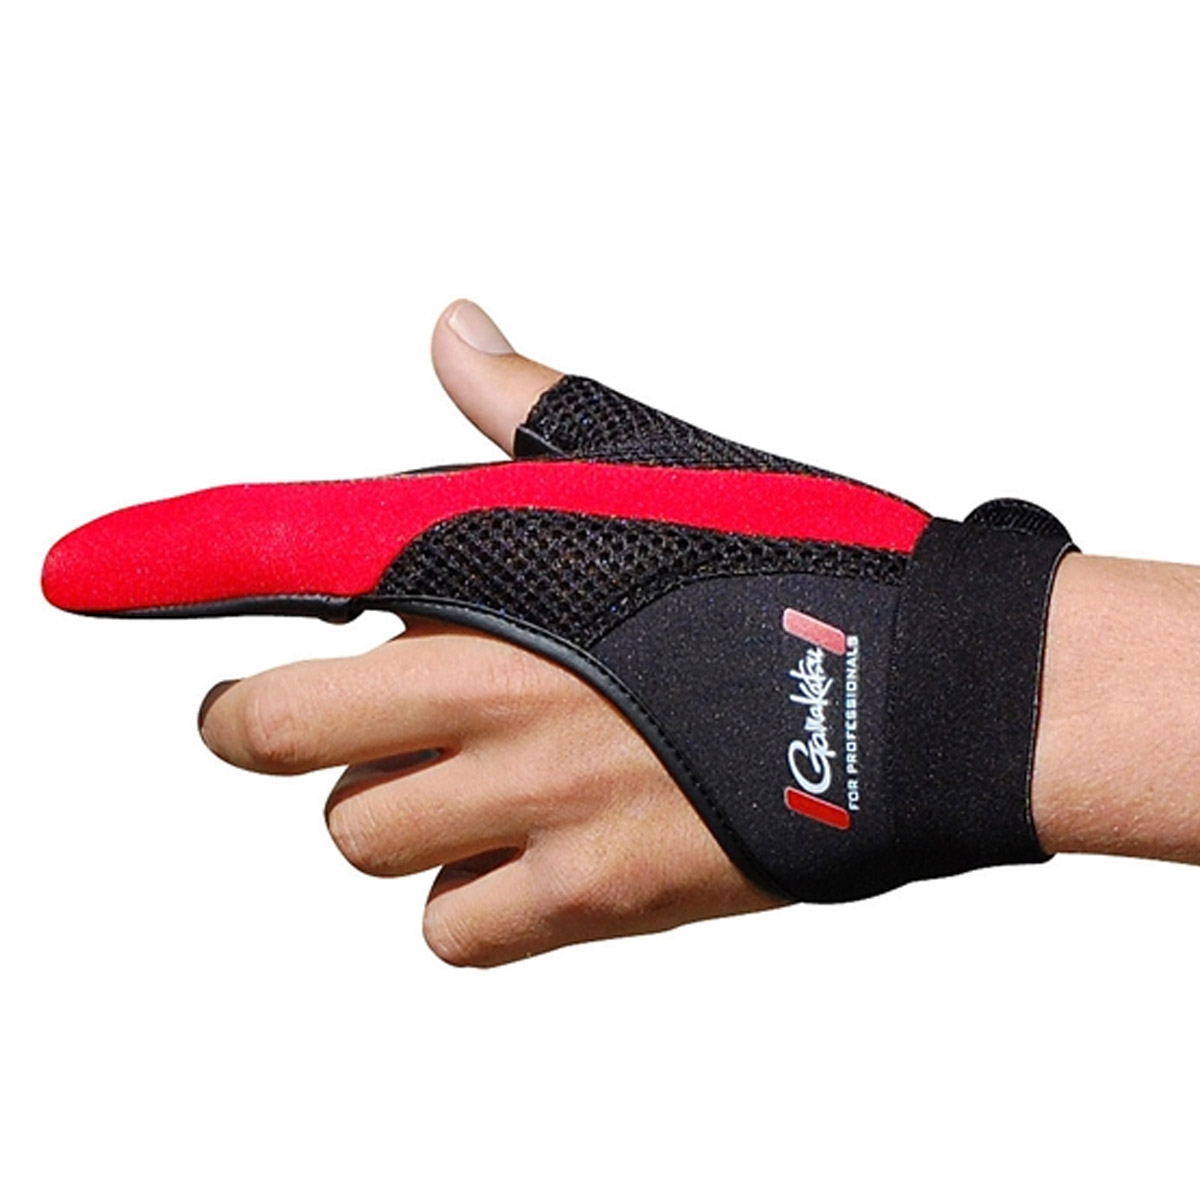 Gamakatsu Casting Protection Glove Rechtshandig -  L